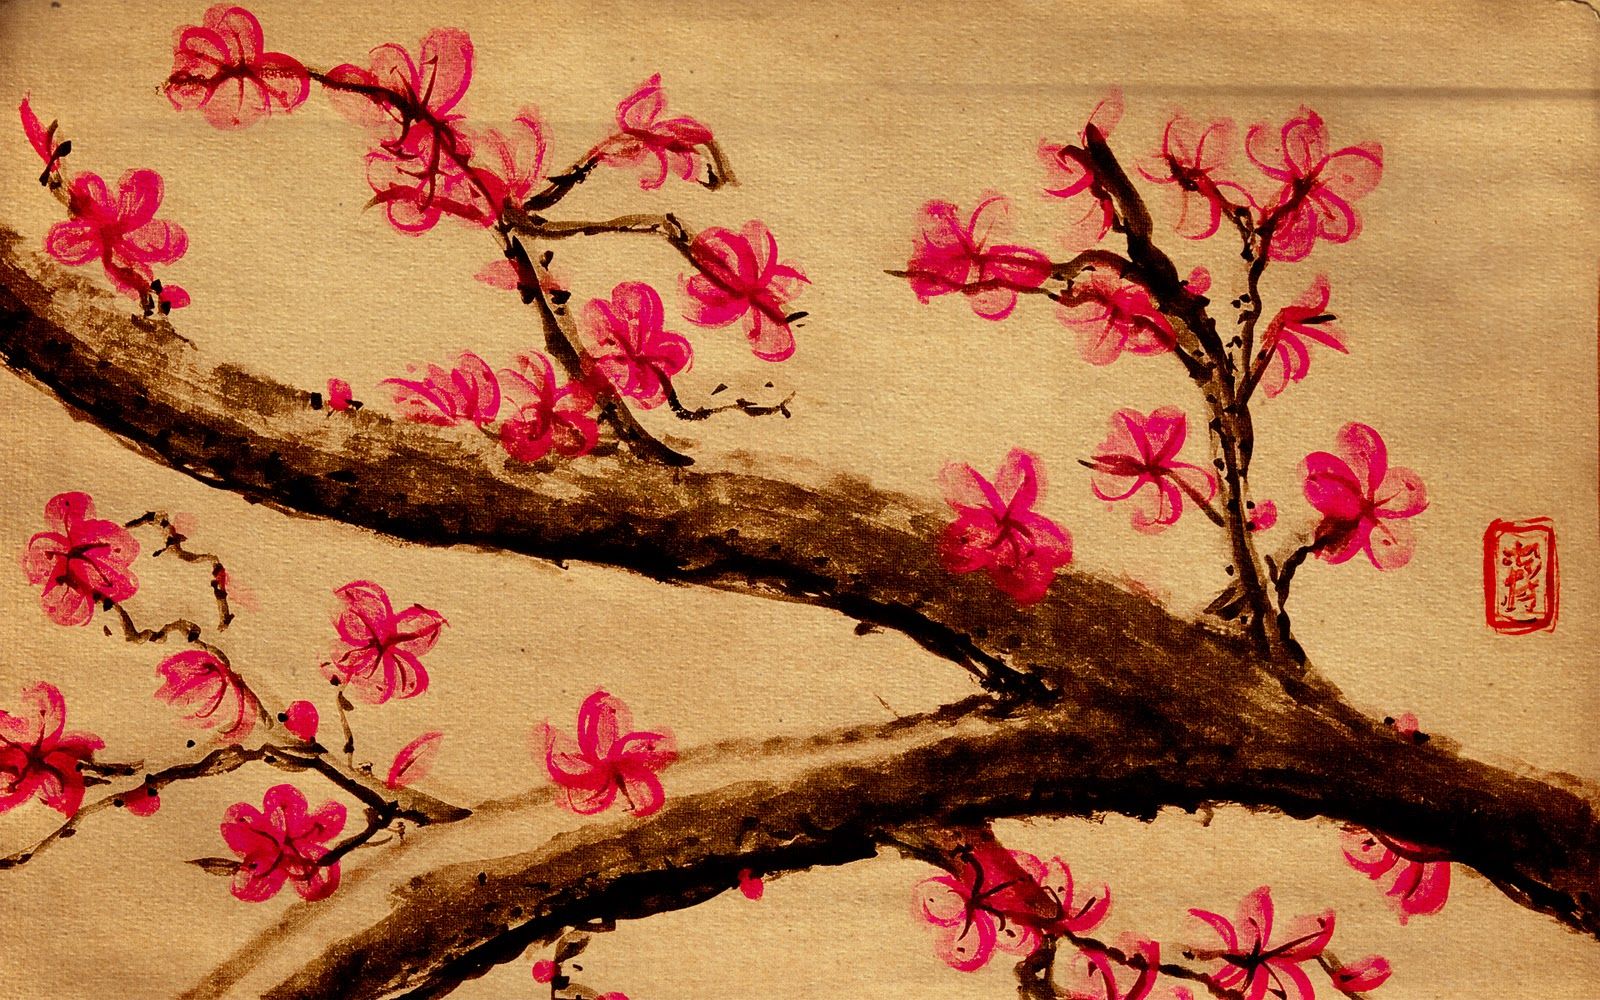 46+] Fondos de flor de cerezo japonés